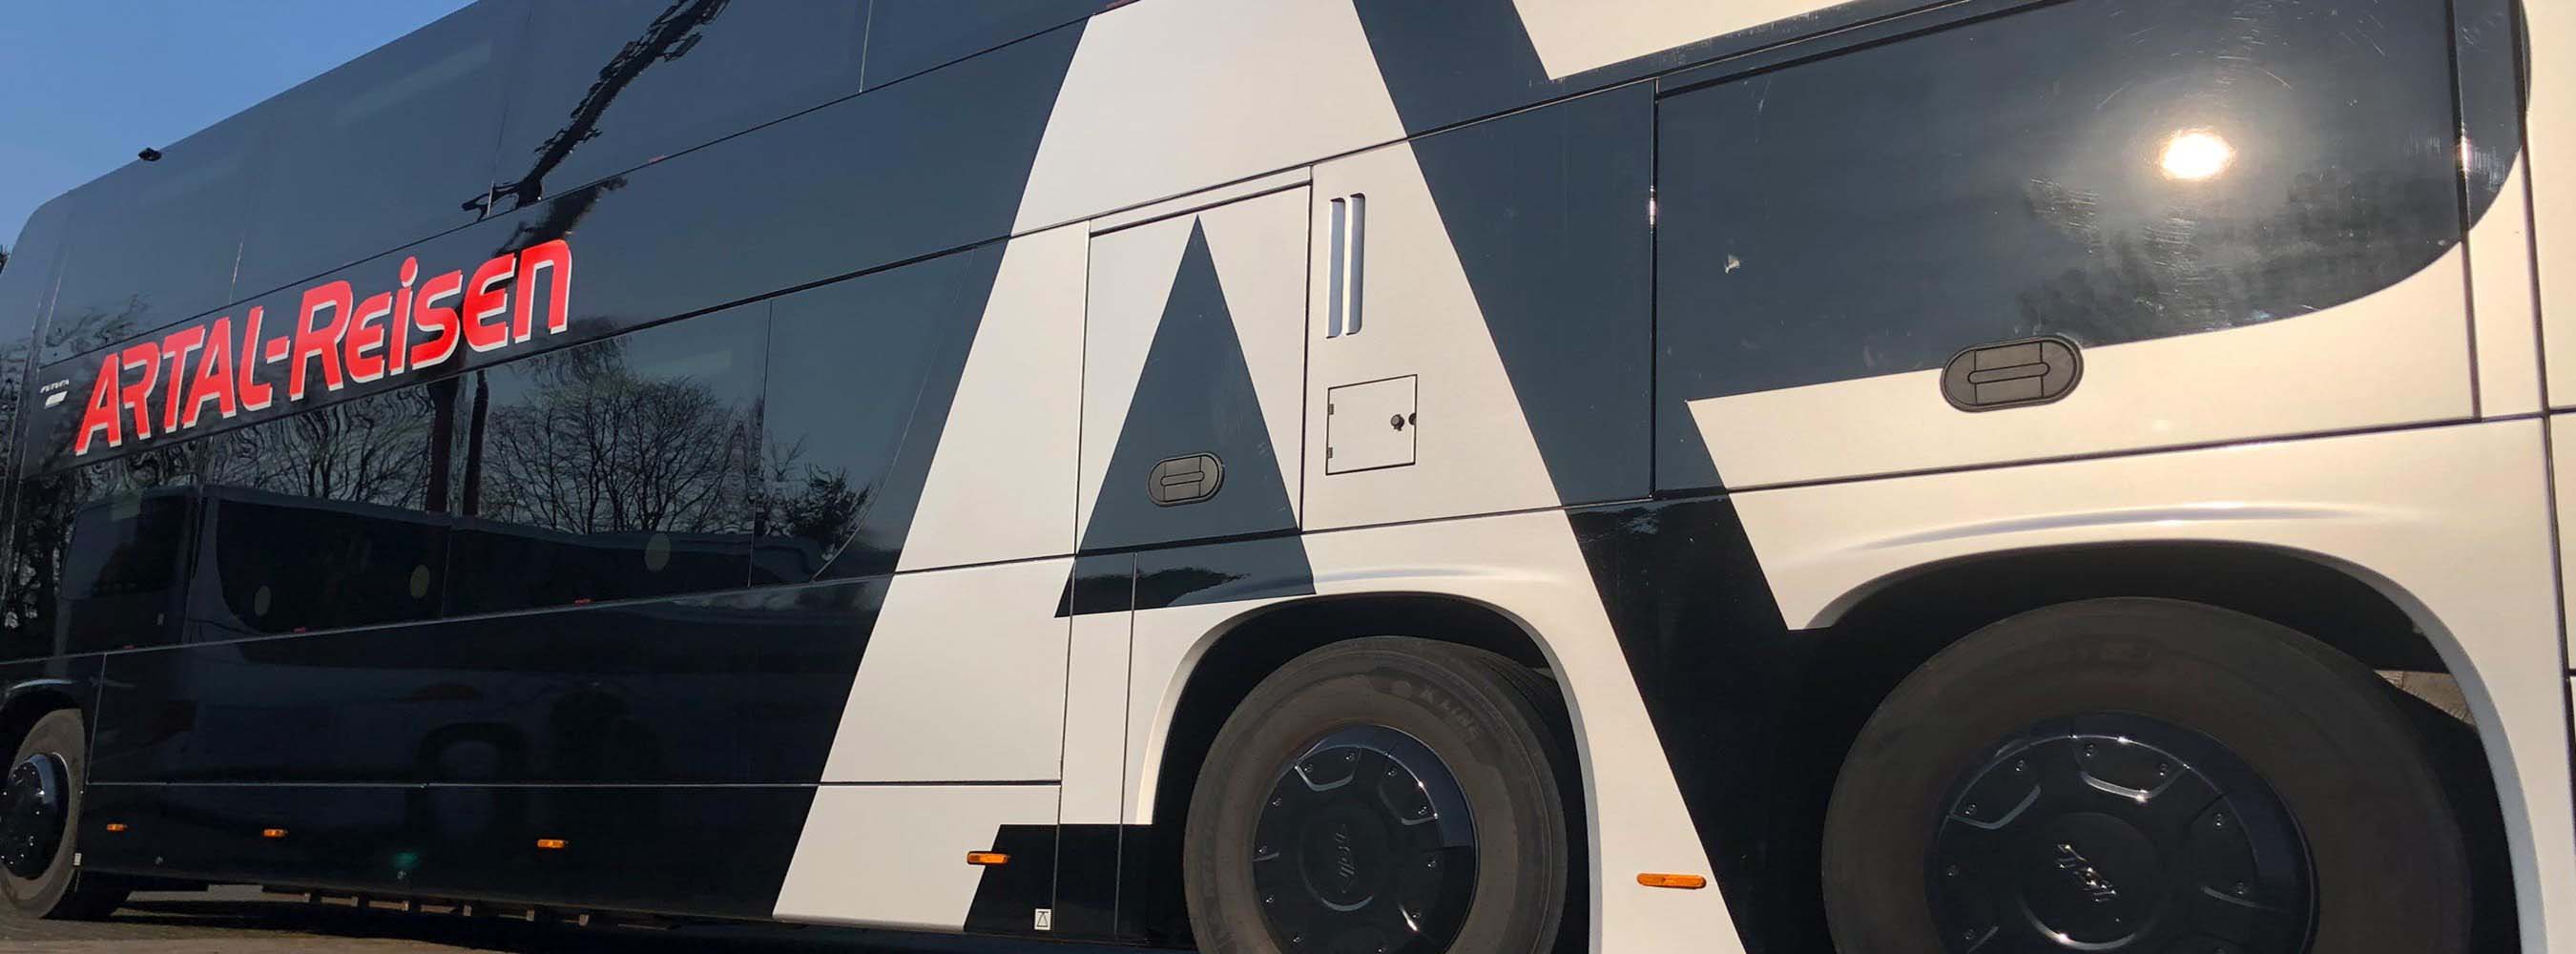 Beschriftung der Busflotte im Bremer Raum für die Firma Artal Reisen